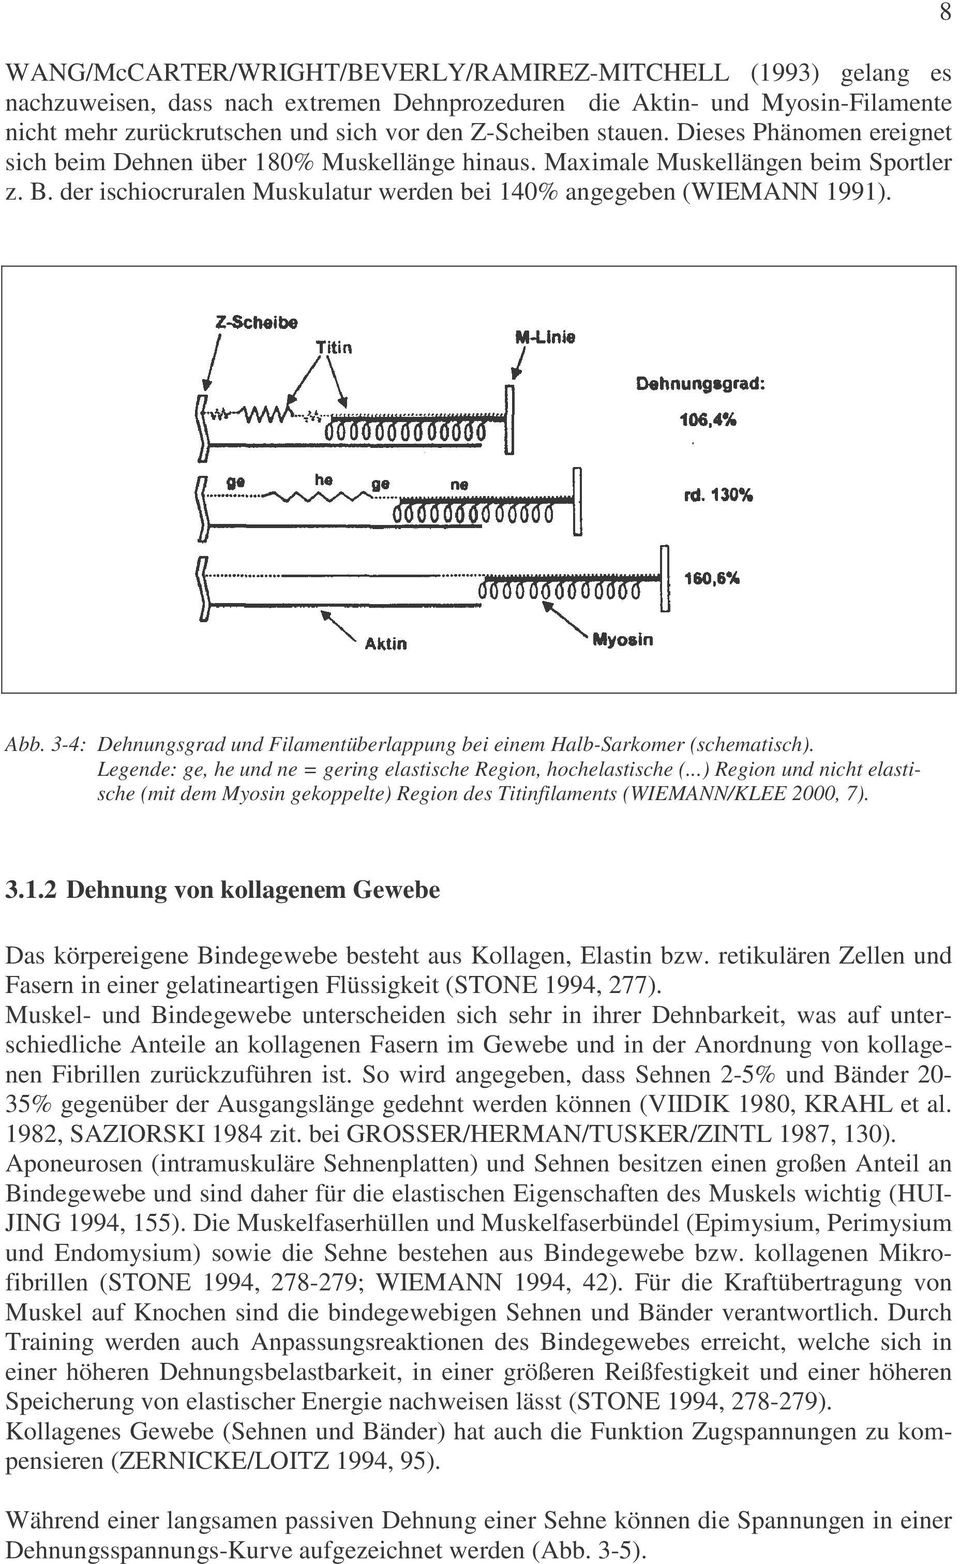 3-4: Dehnungsgrad und Filamentüberlappung bei einem Halb-Sarkomer (schematisch). Legende: ge, he und ne = gering elastische Region, hochelastische (.